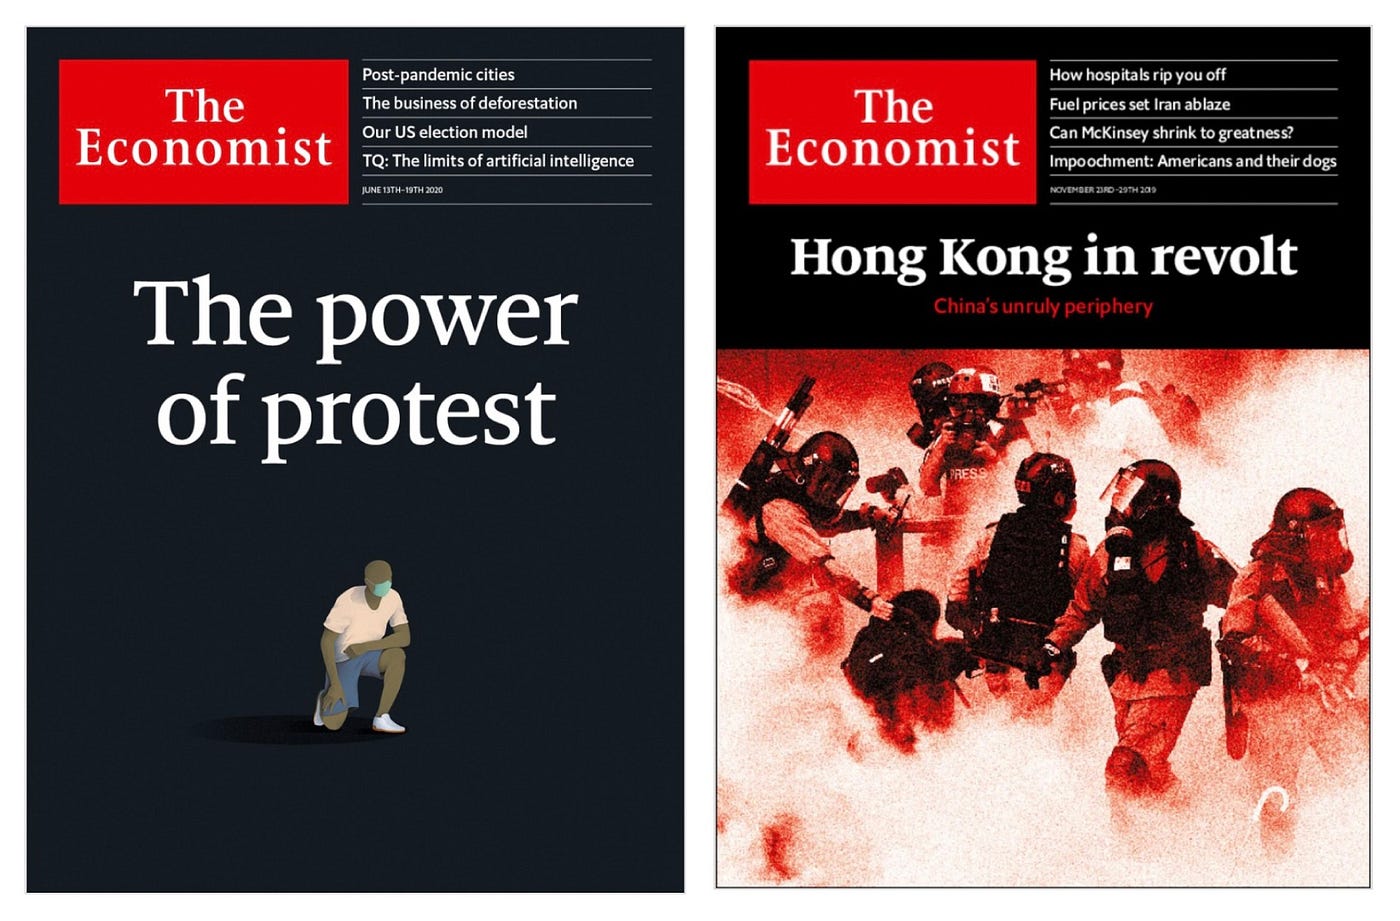 How The Economist Is The Worst Propaganda